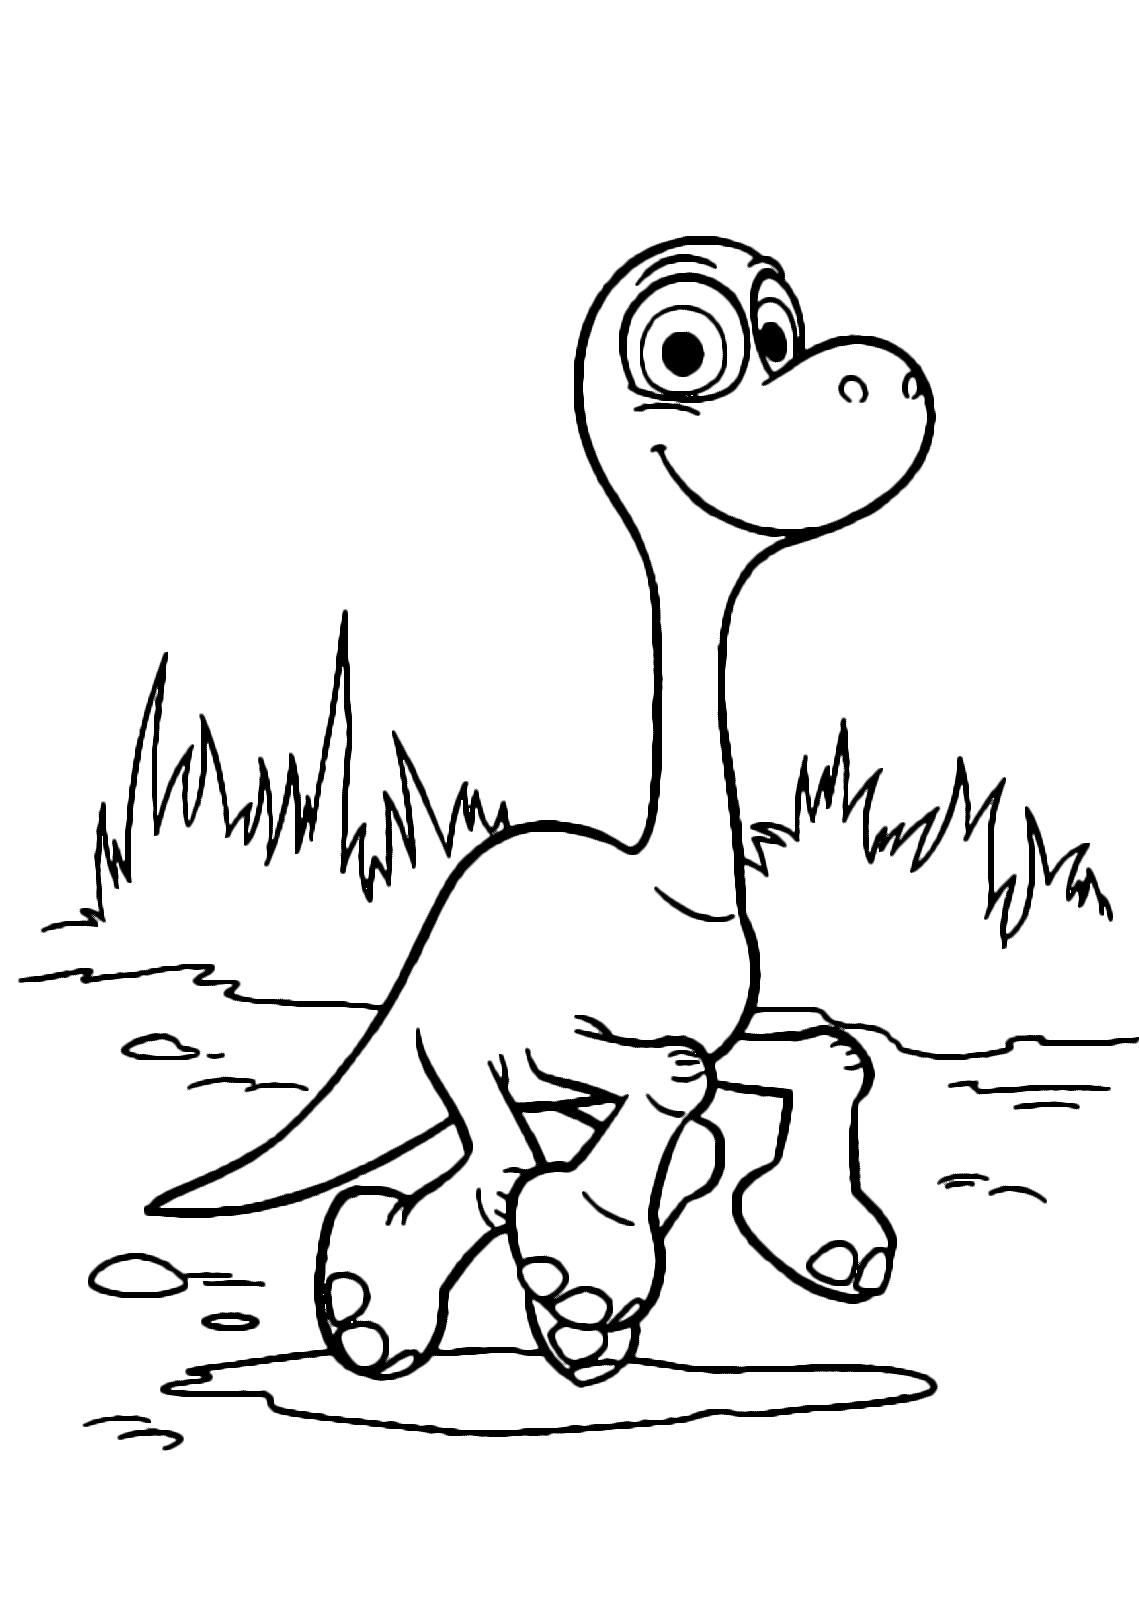 The Good Dinosaur - Little Arlo walks happy